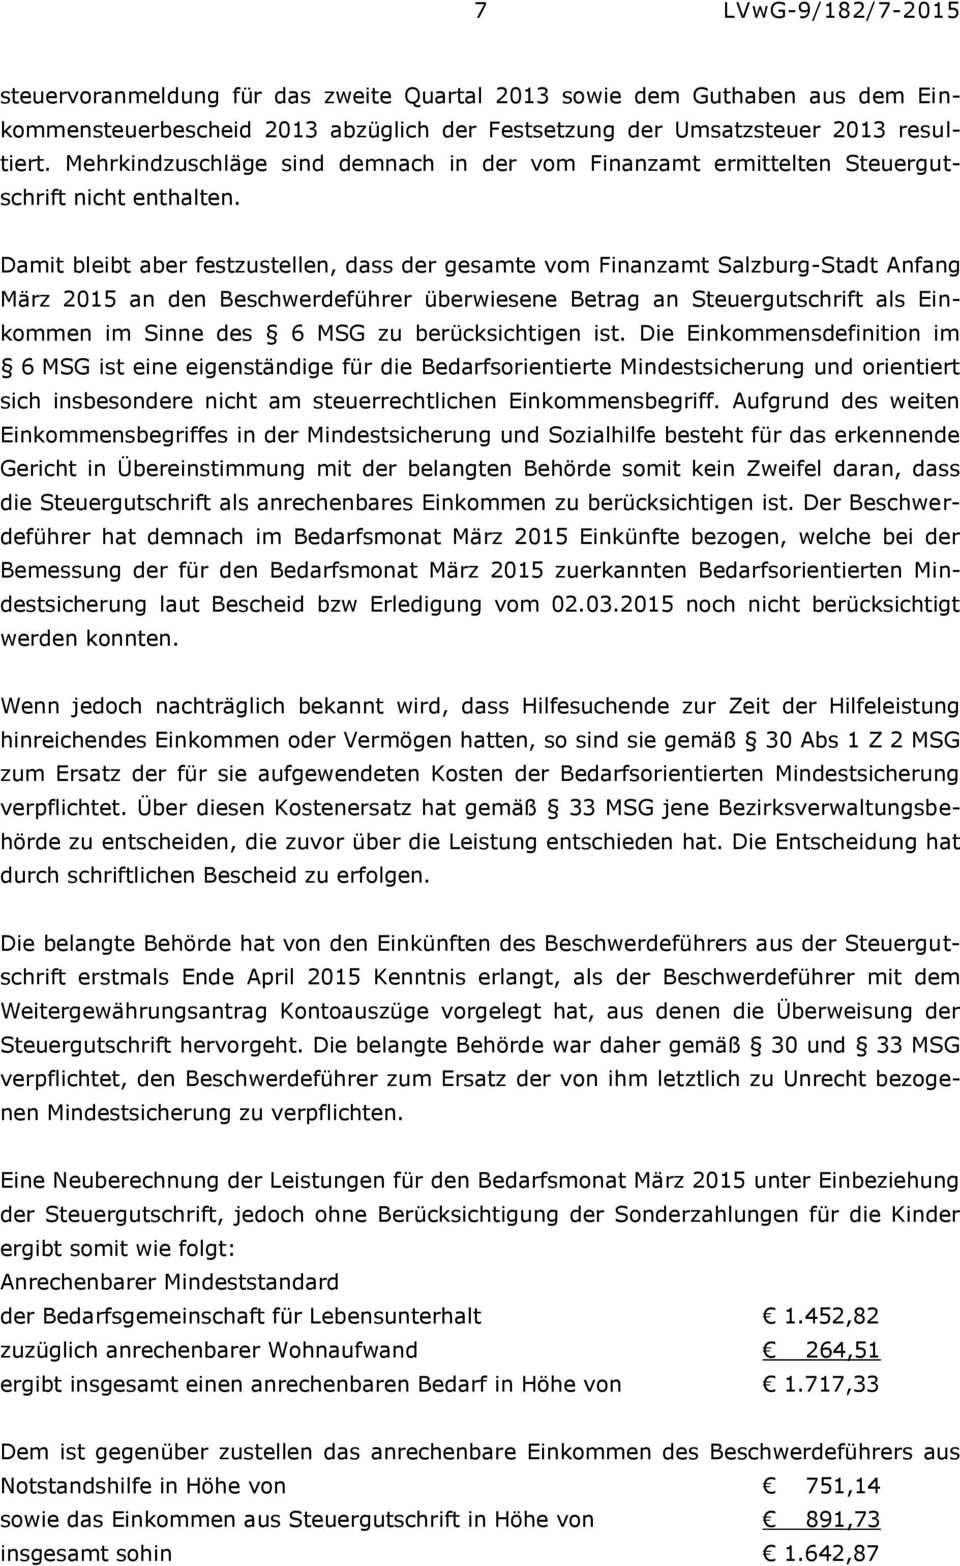 Damit bleibt aber festzustellen, dass der gesamte vom Finanzamt Salzburg-Stadt Anfang März 2015 an den Beschwerdeführer überwiesene Betrag an Steuergutschrift als Einkommen im Sinne des 6 MSG zu